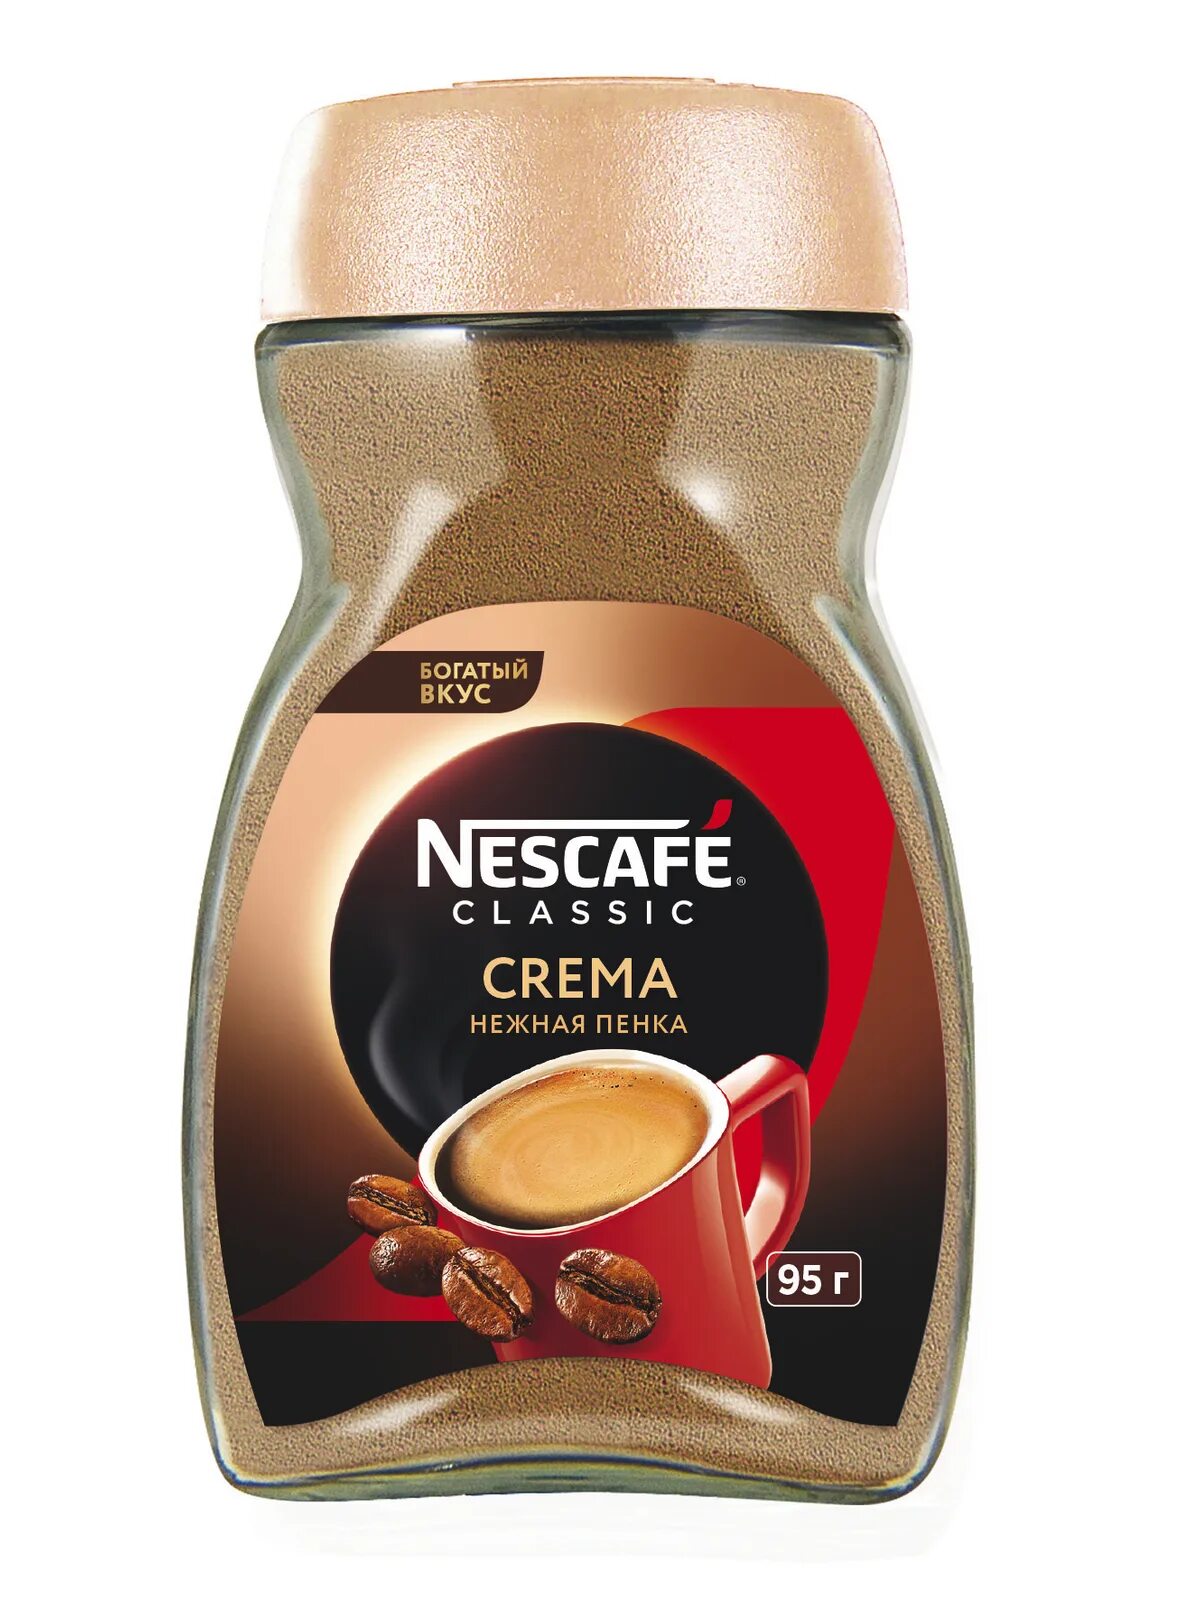 Купить nescafe растворимый кофе. Nescafe Classic crema 95 г. Кофе растворимый Nescafe Classic crema 95г. Кофе растворимый Nescafe Gold crema. Нескафе Классик крема 95 гр стекло.